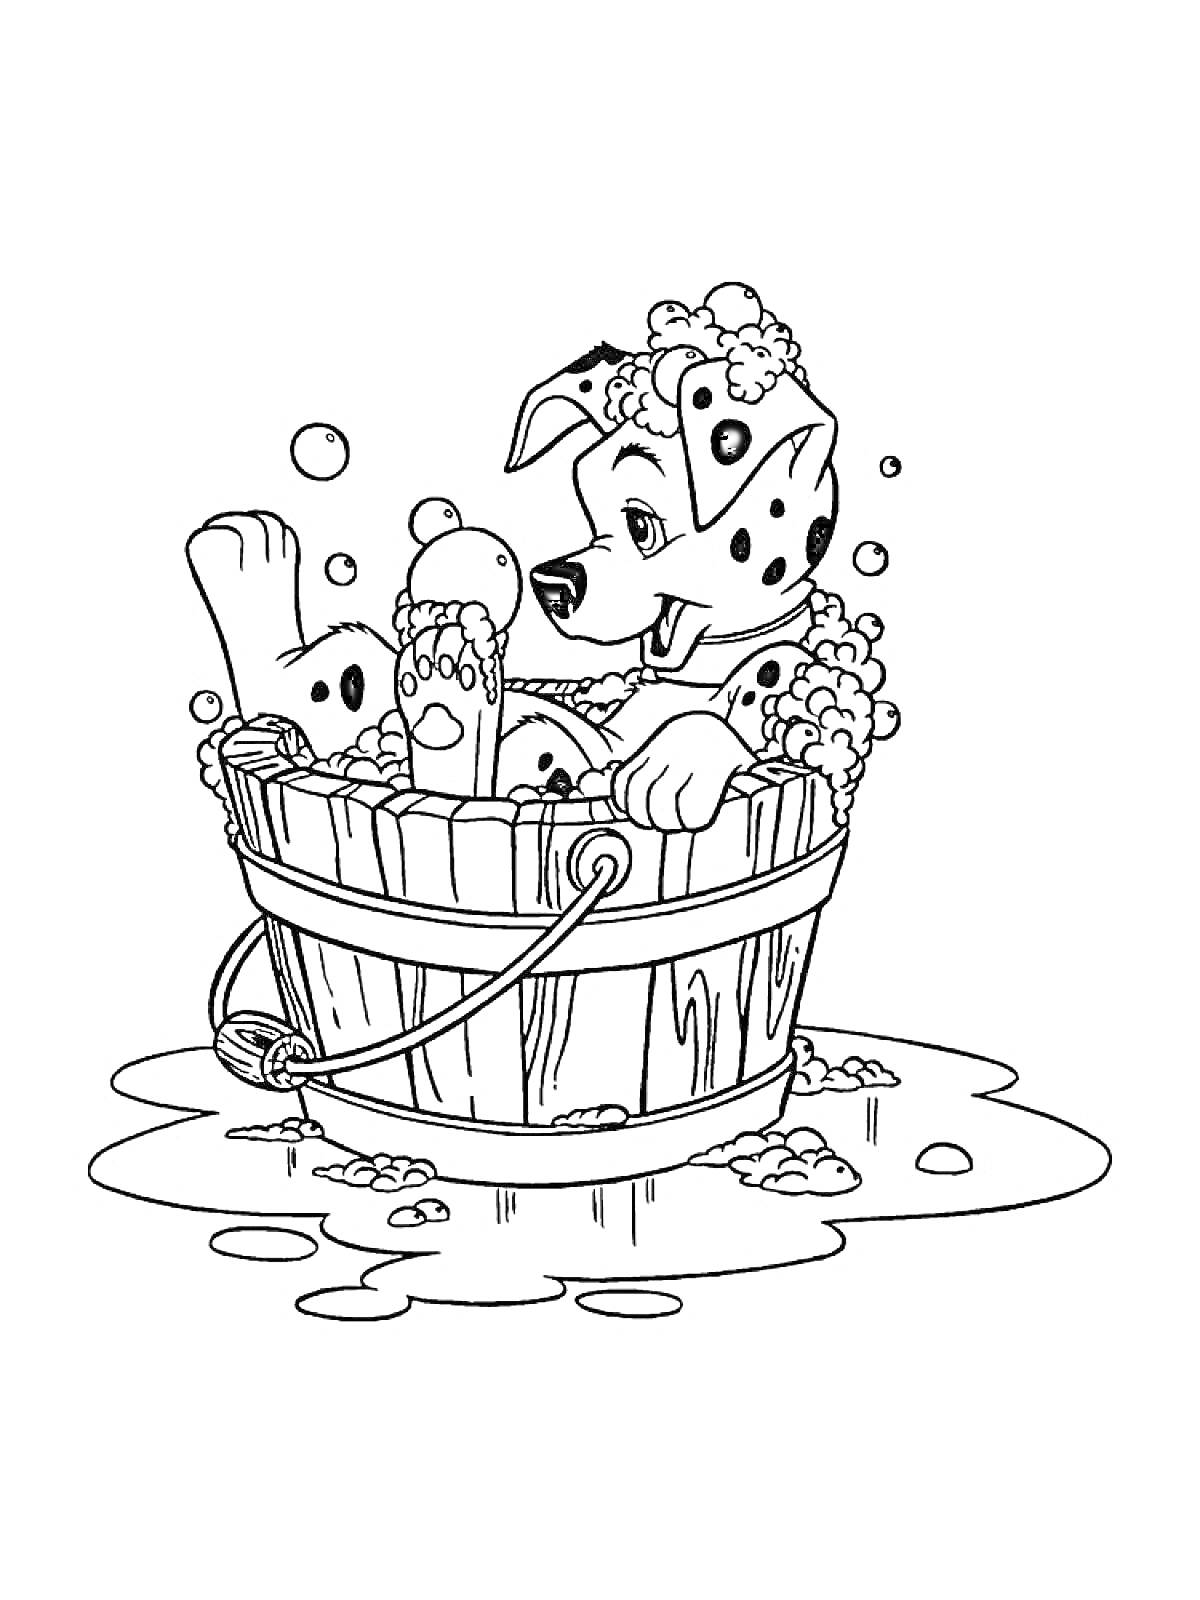 Раскраска Пёс-щенок купается в деревянной бочке с мыльной пеной